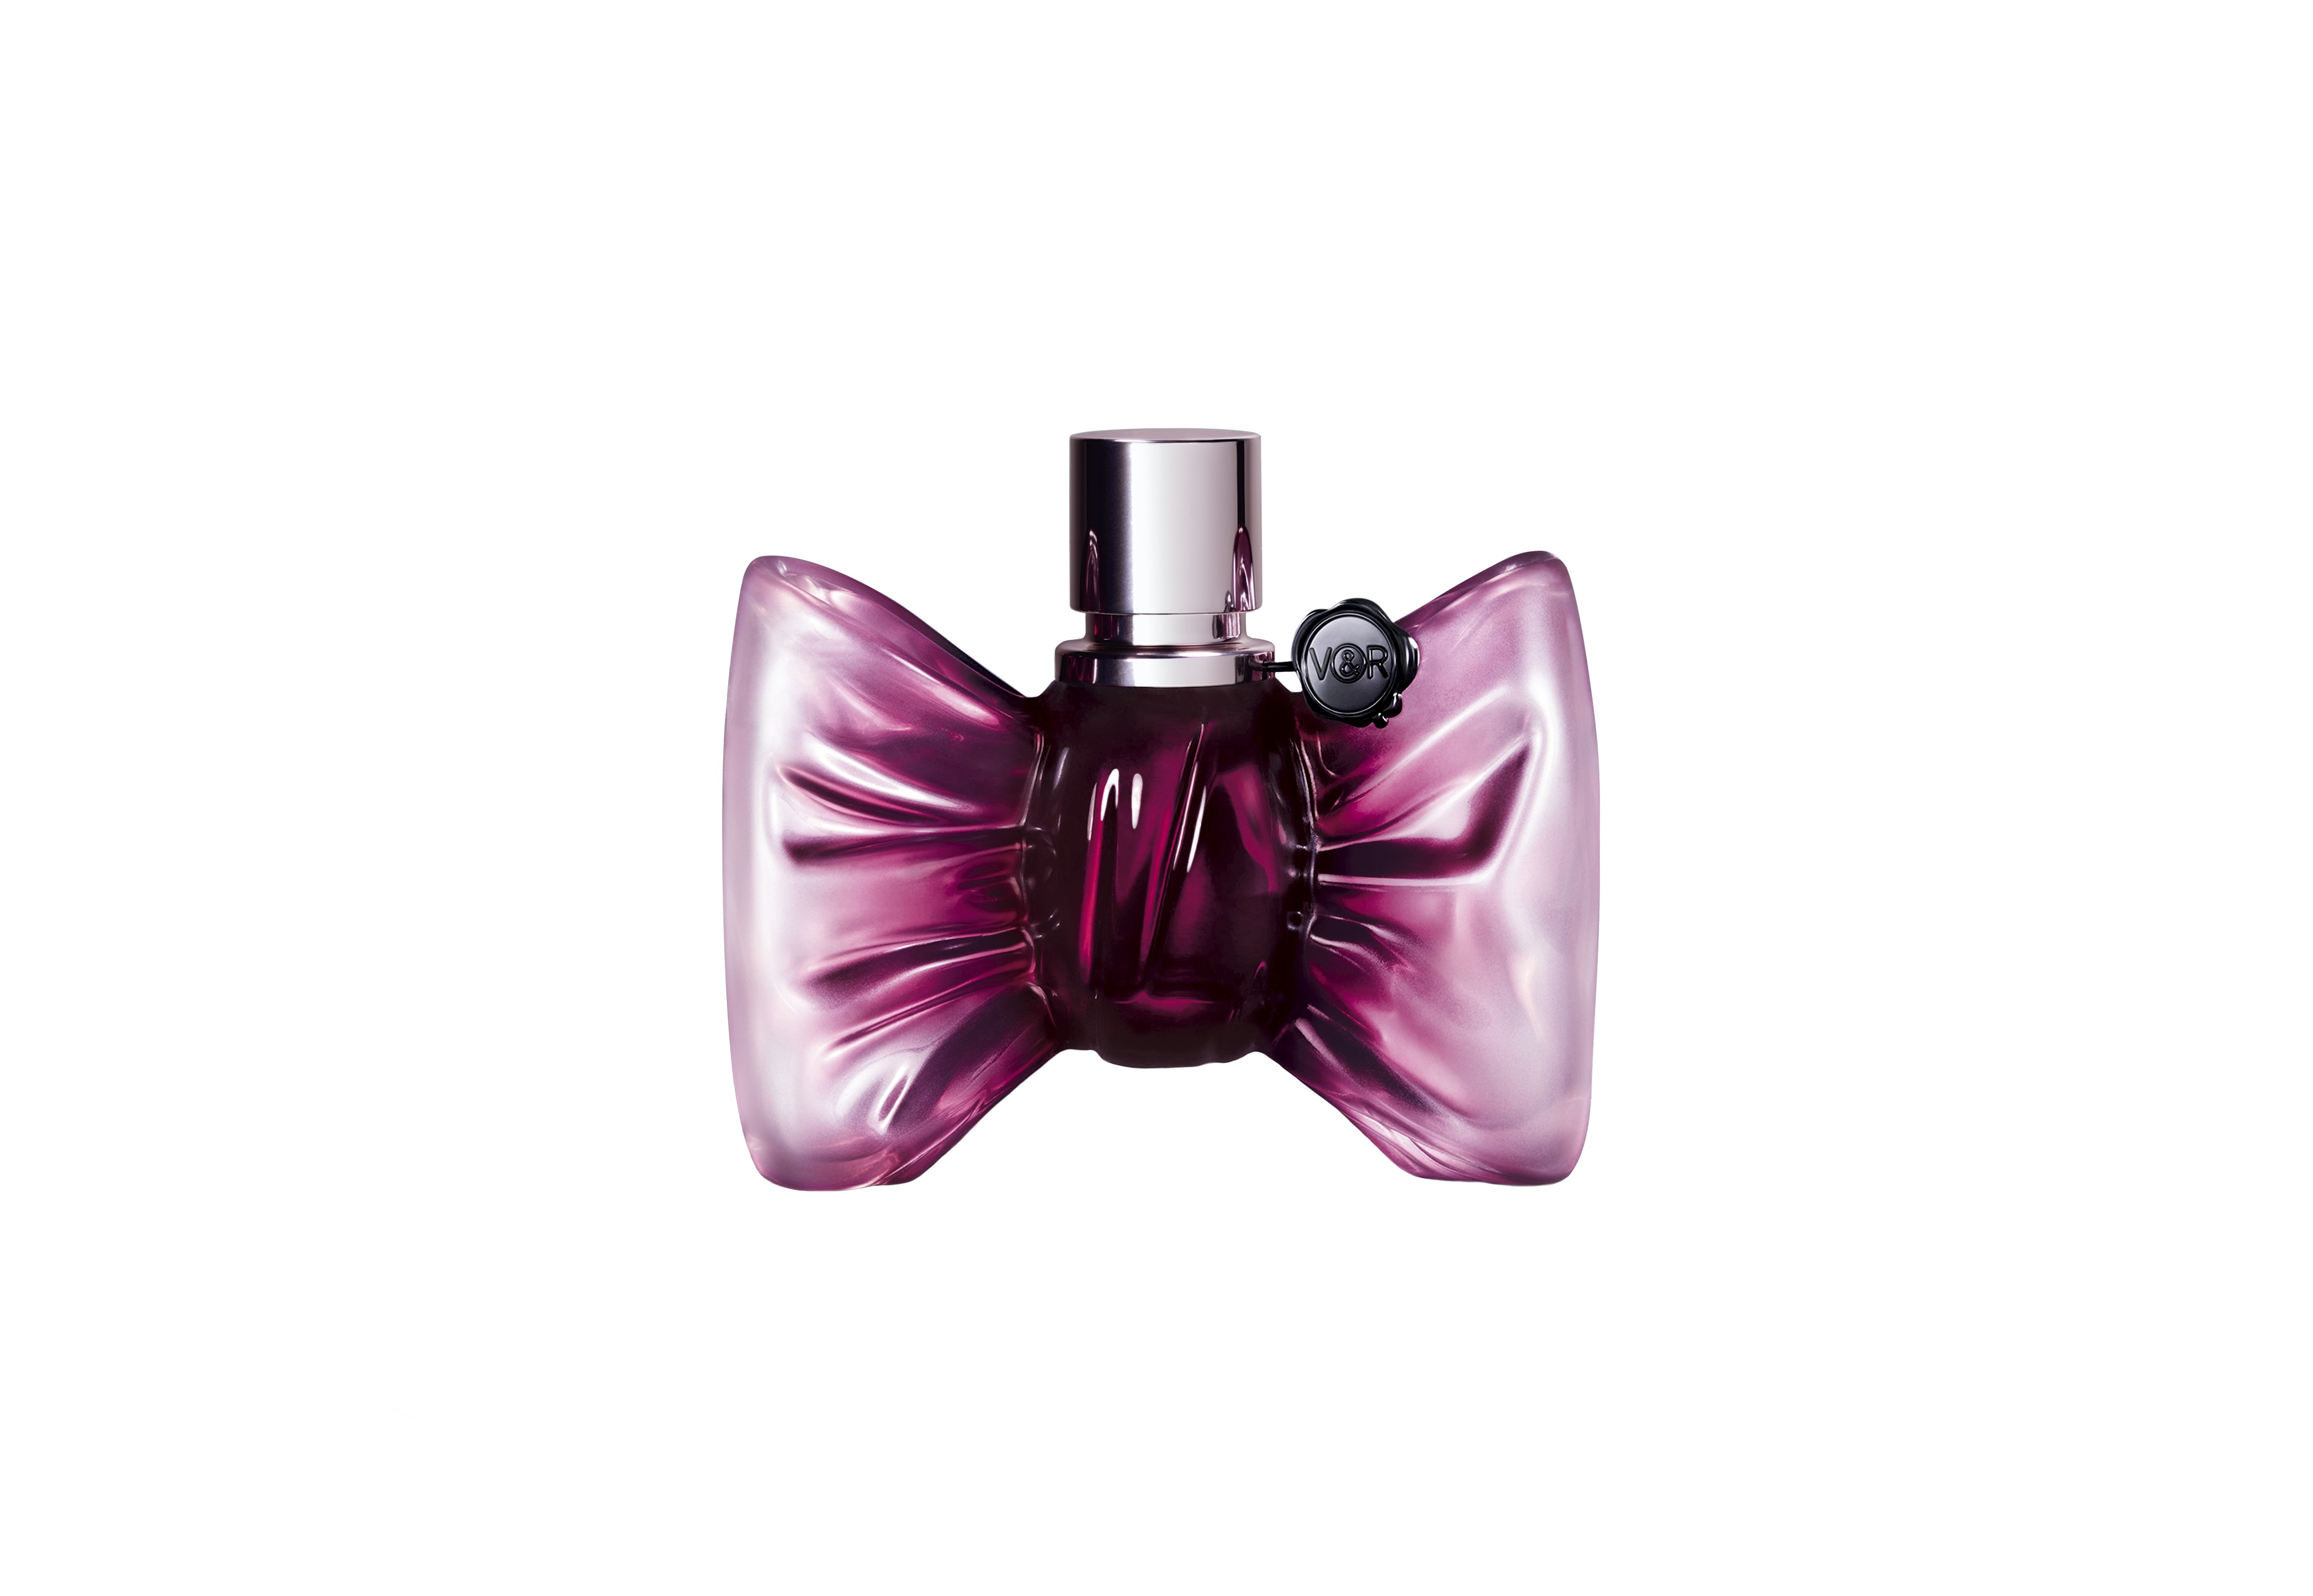 Viktor & Rolf profumo Bonbon Couture: la nuova fragranza femminile